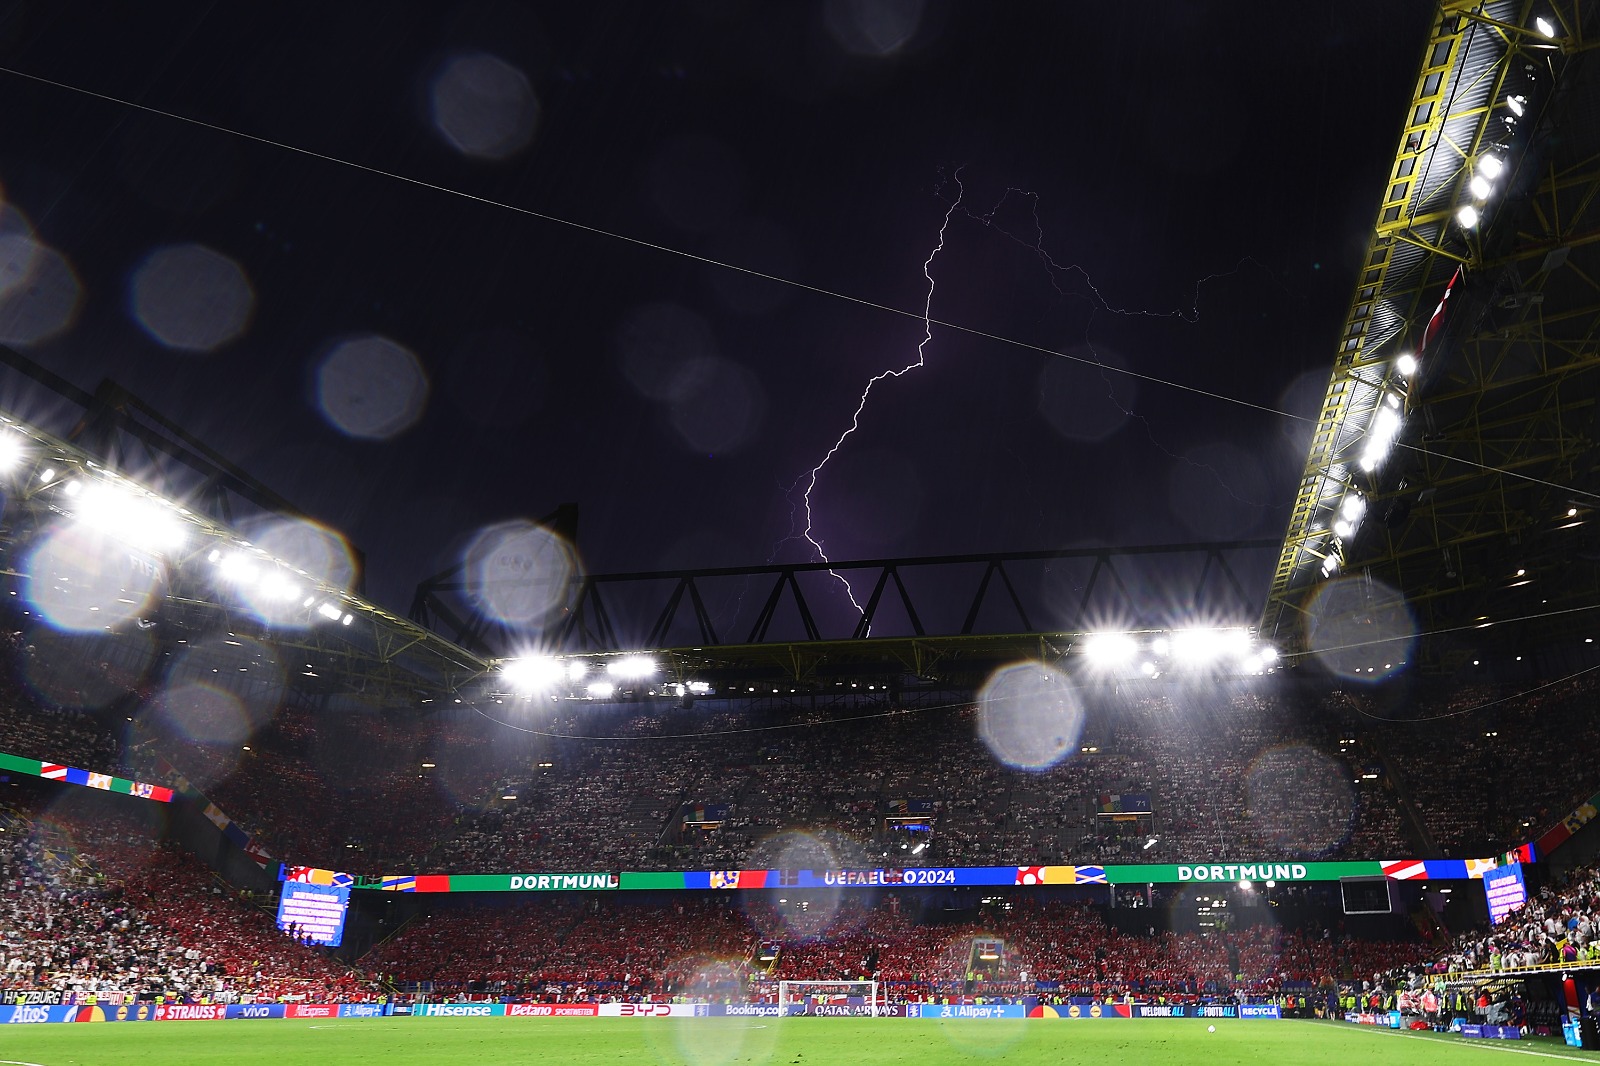 O temporal no jogo entre Alemanha e Dinamarca. (Foto: Photo by Alexander Hassenstein/Getty Images)